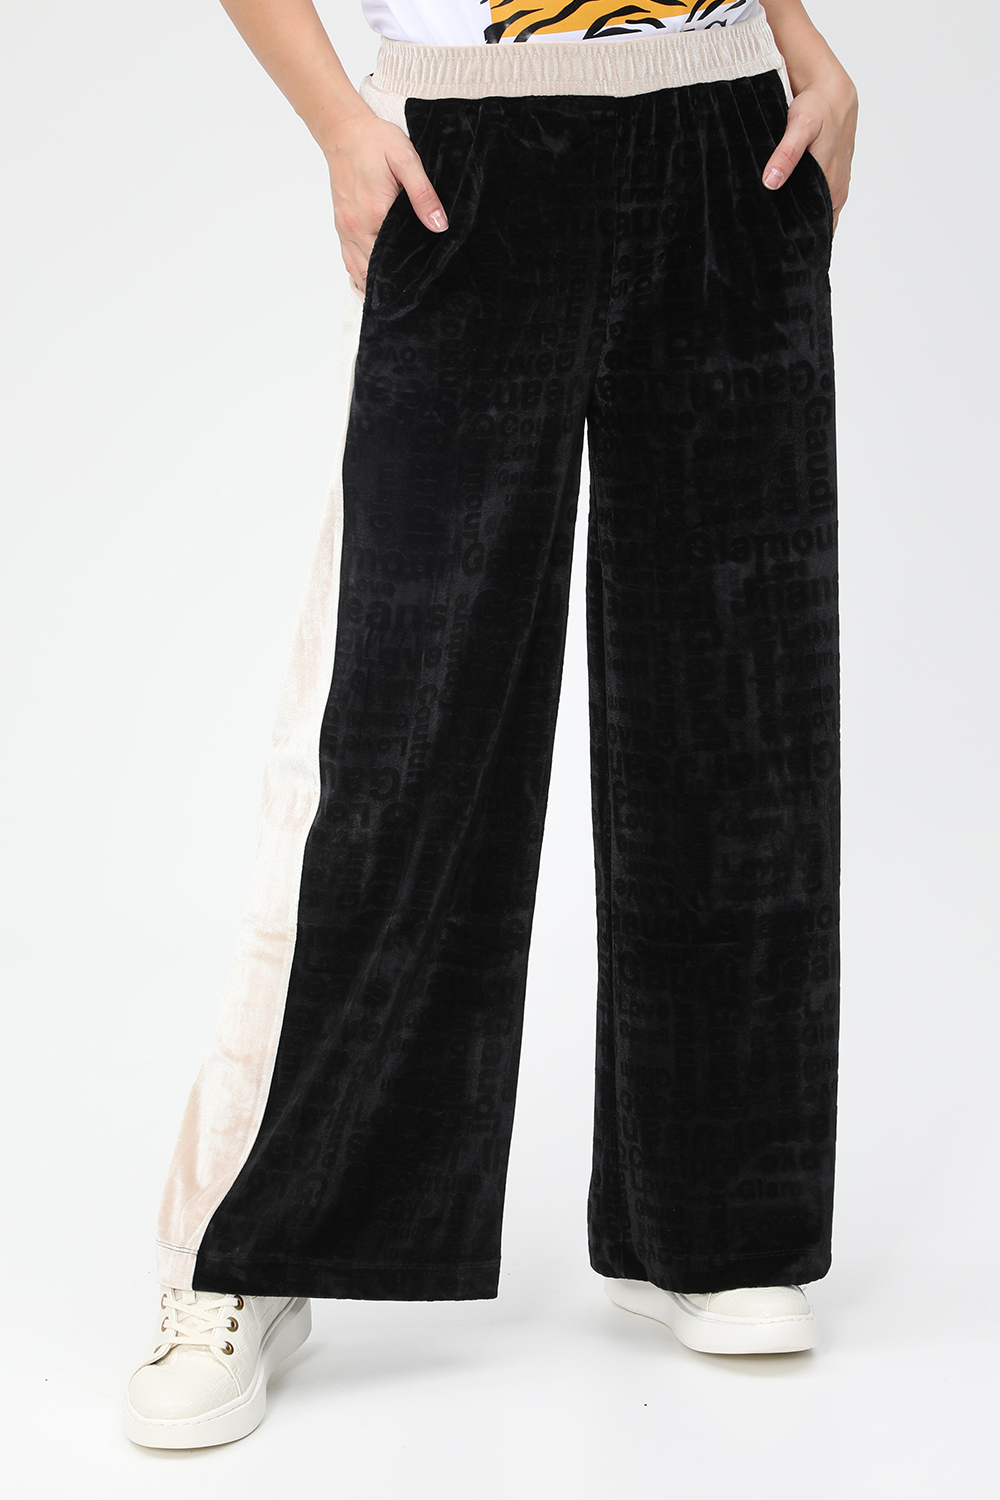 Γυναικεία/Ρούχα/Παντελόνια/Φόρμες GAUDI - Γυναικείο παντελόνι φόρμας GAUDI JEANS Collect μαύρο εκρού